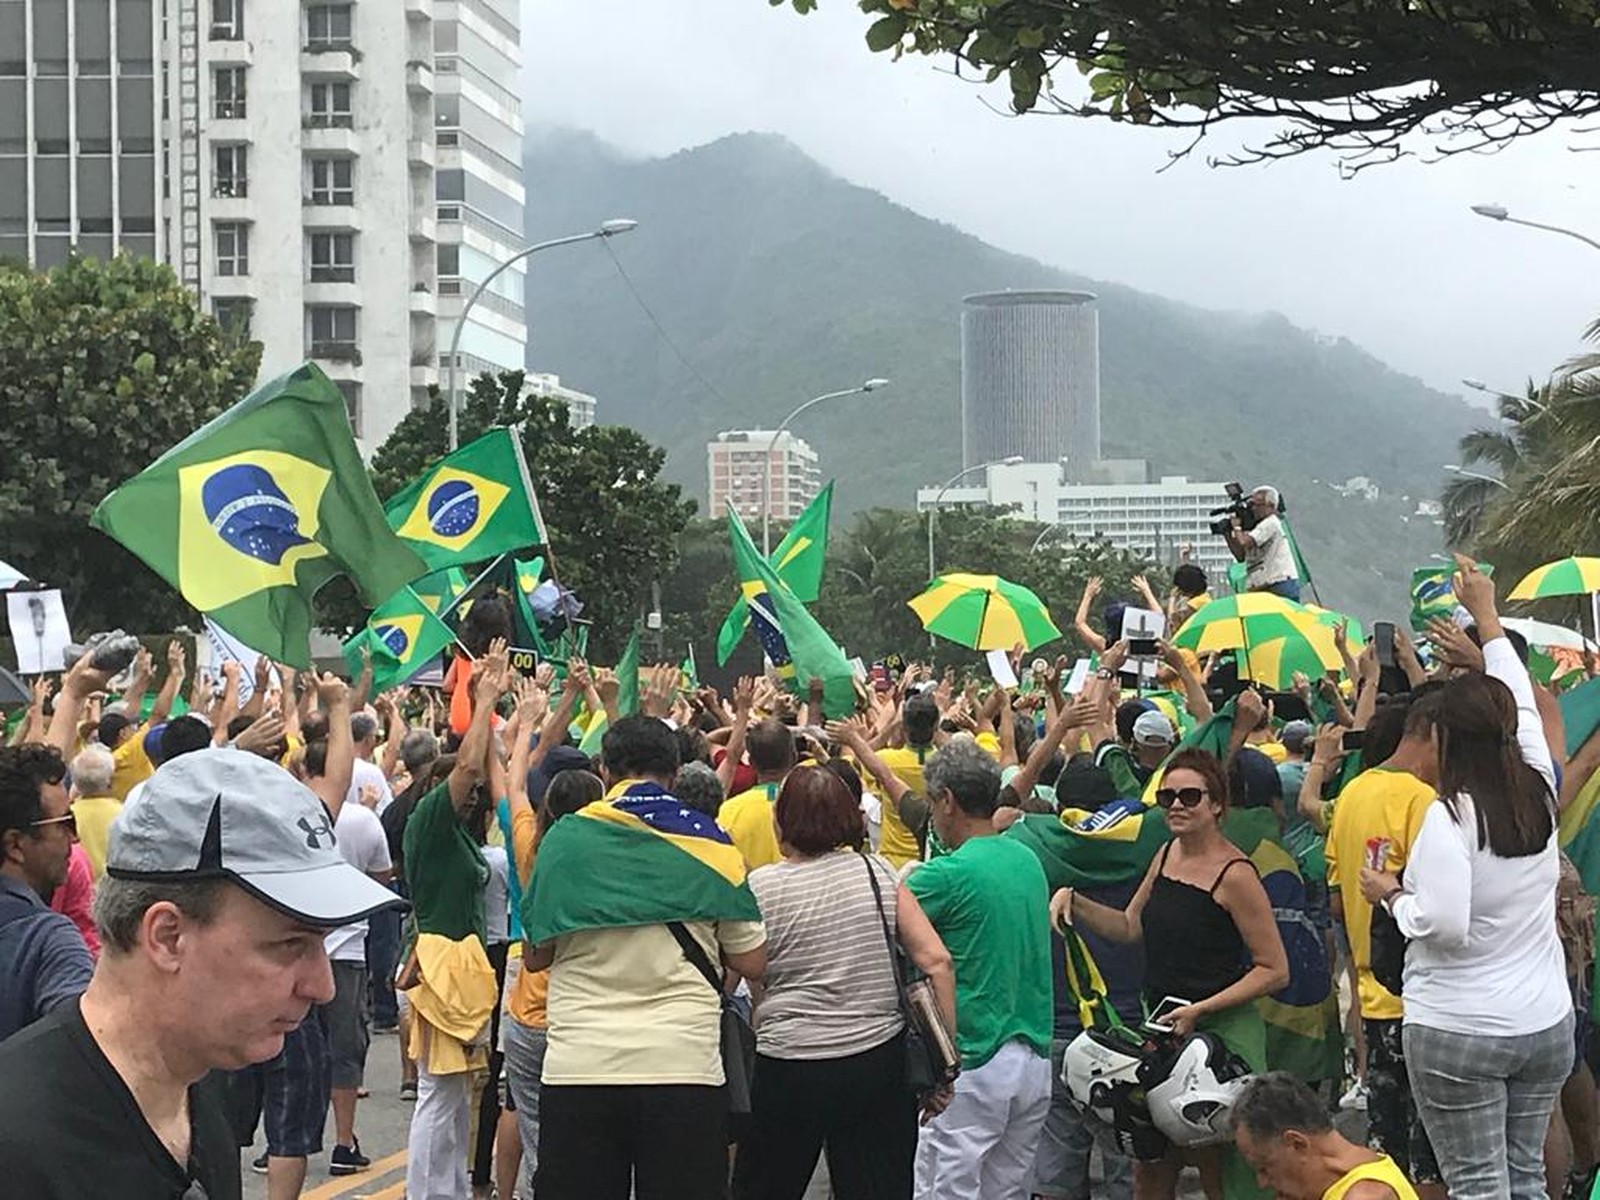 In Rio, protesters gathered around a small sound car and took up less than a block off São Conrado beach